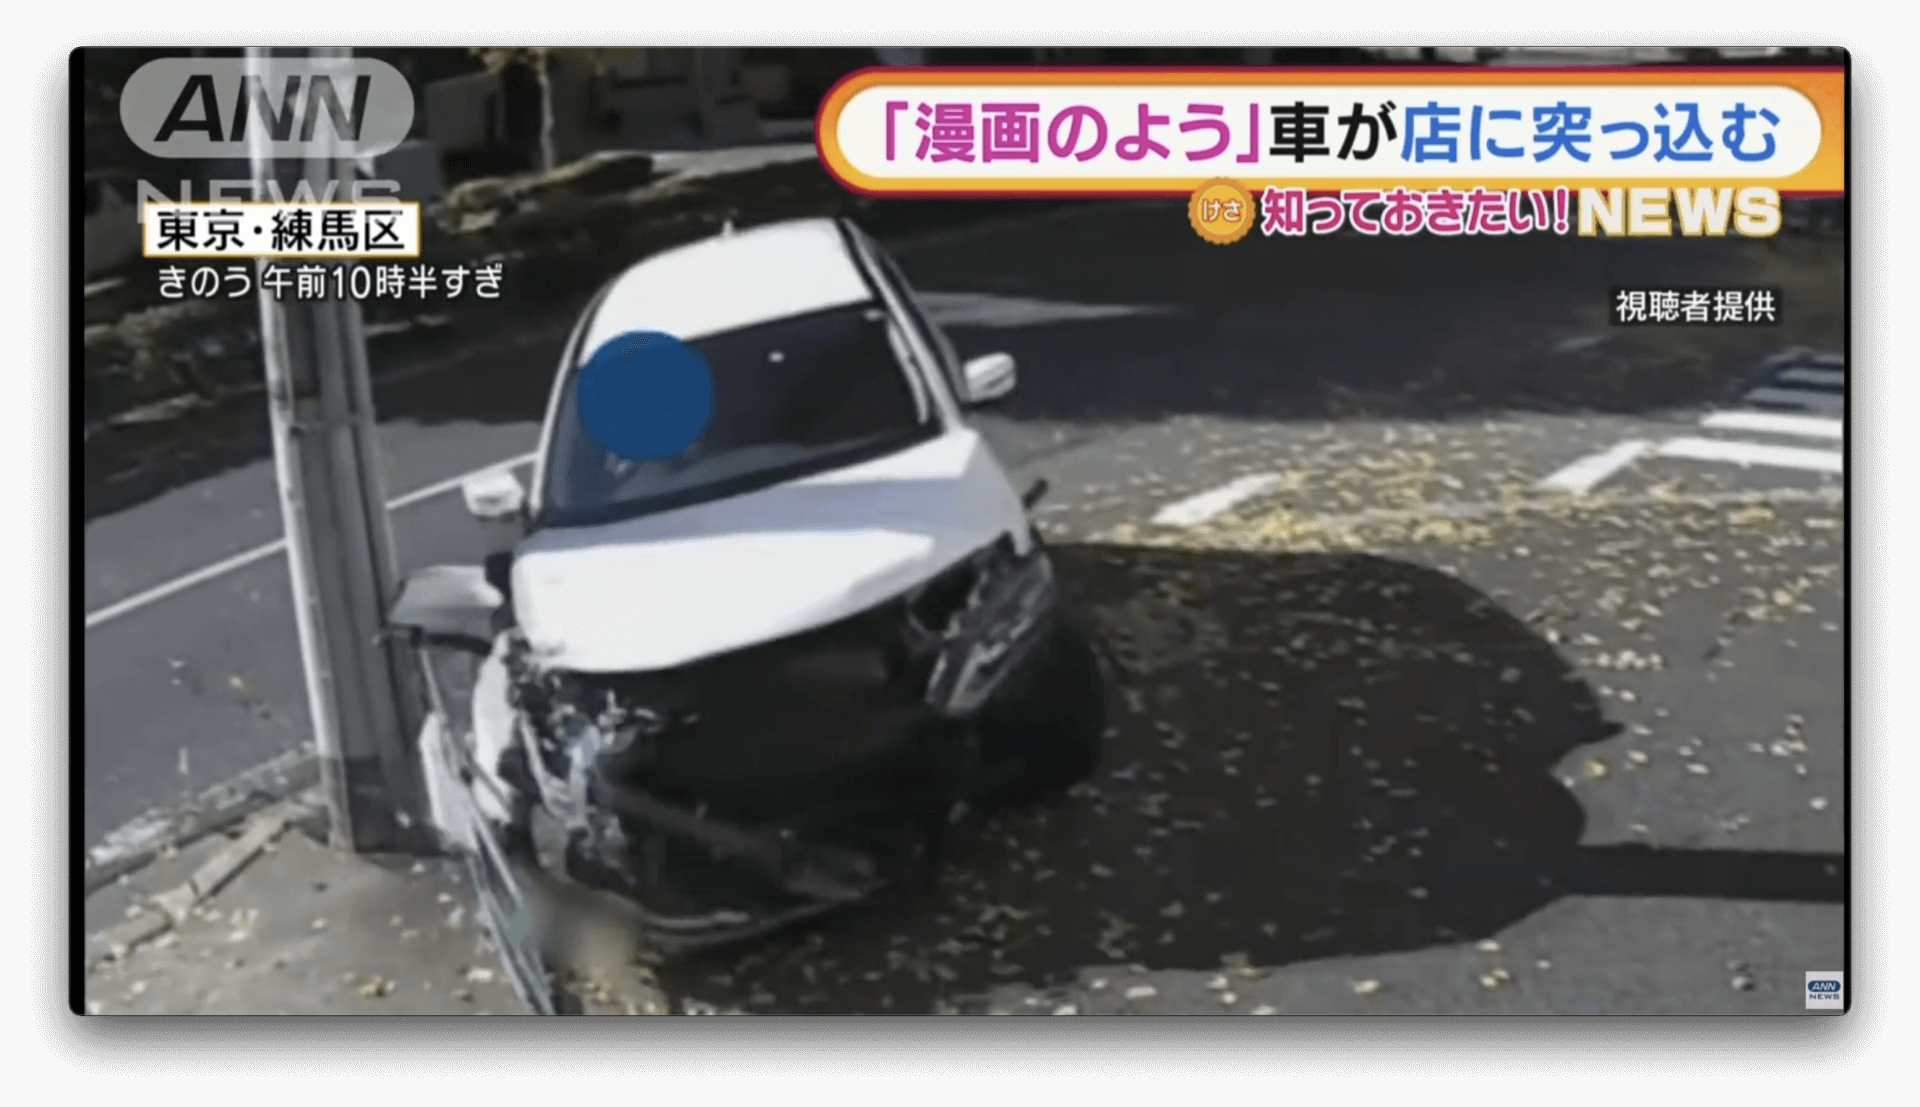 Carro colide com caminhão e entra em uma loja em Tóquio